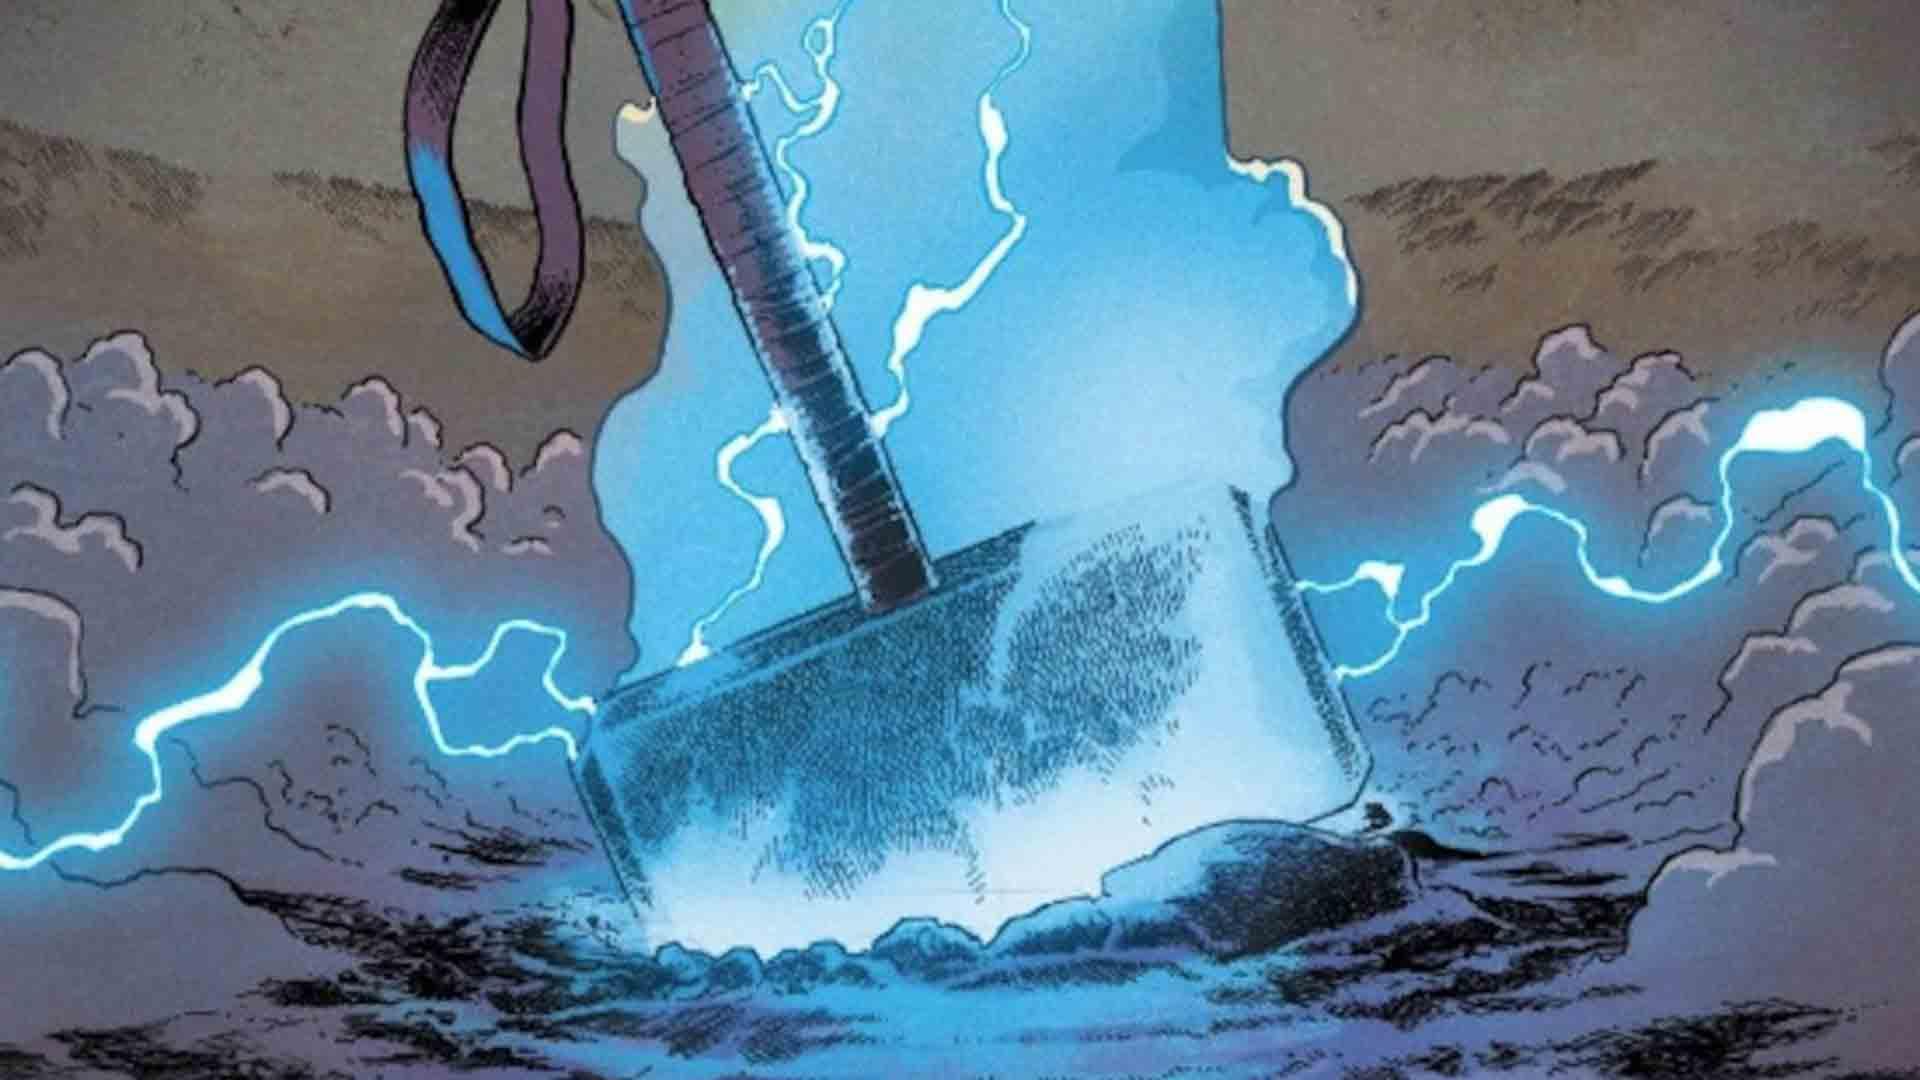 چکش ثور در شماره جدید Thor به دست یک شرور دیگر افتاد